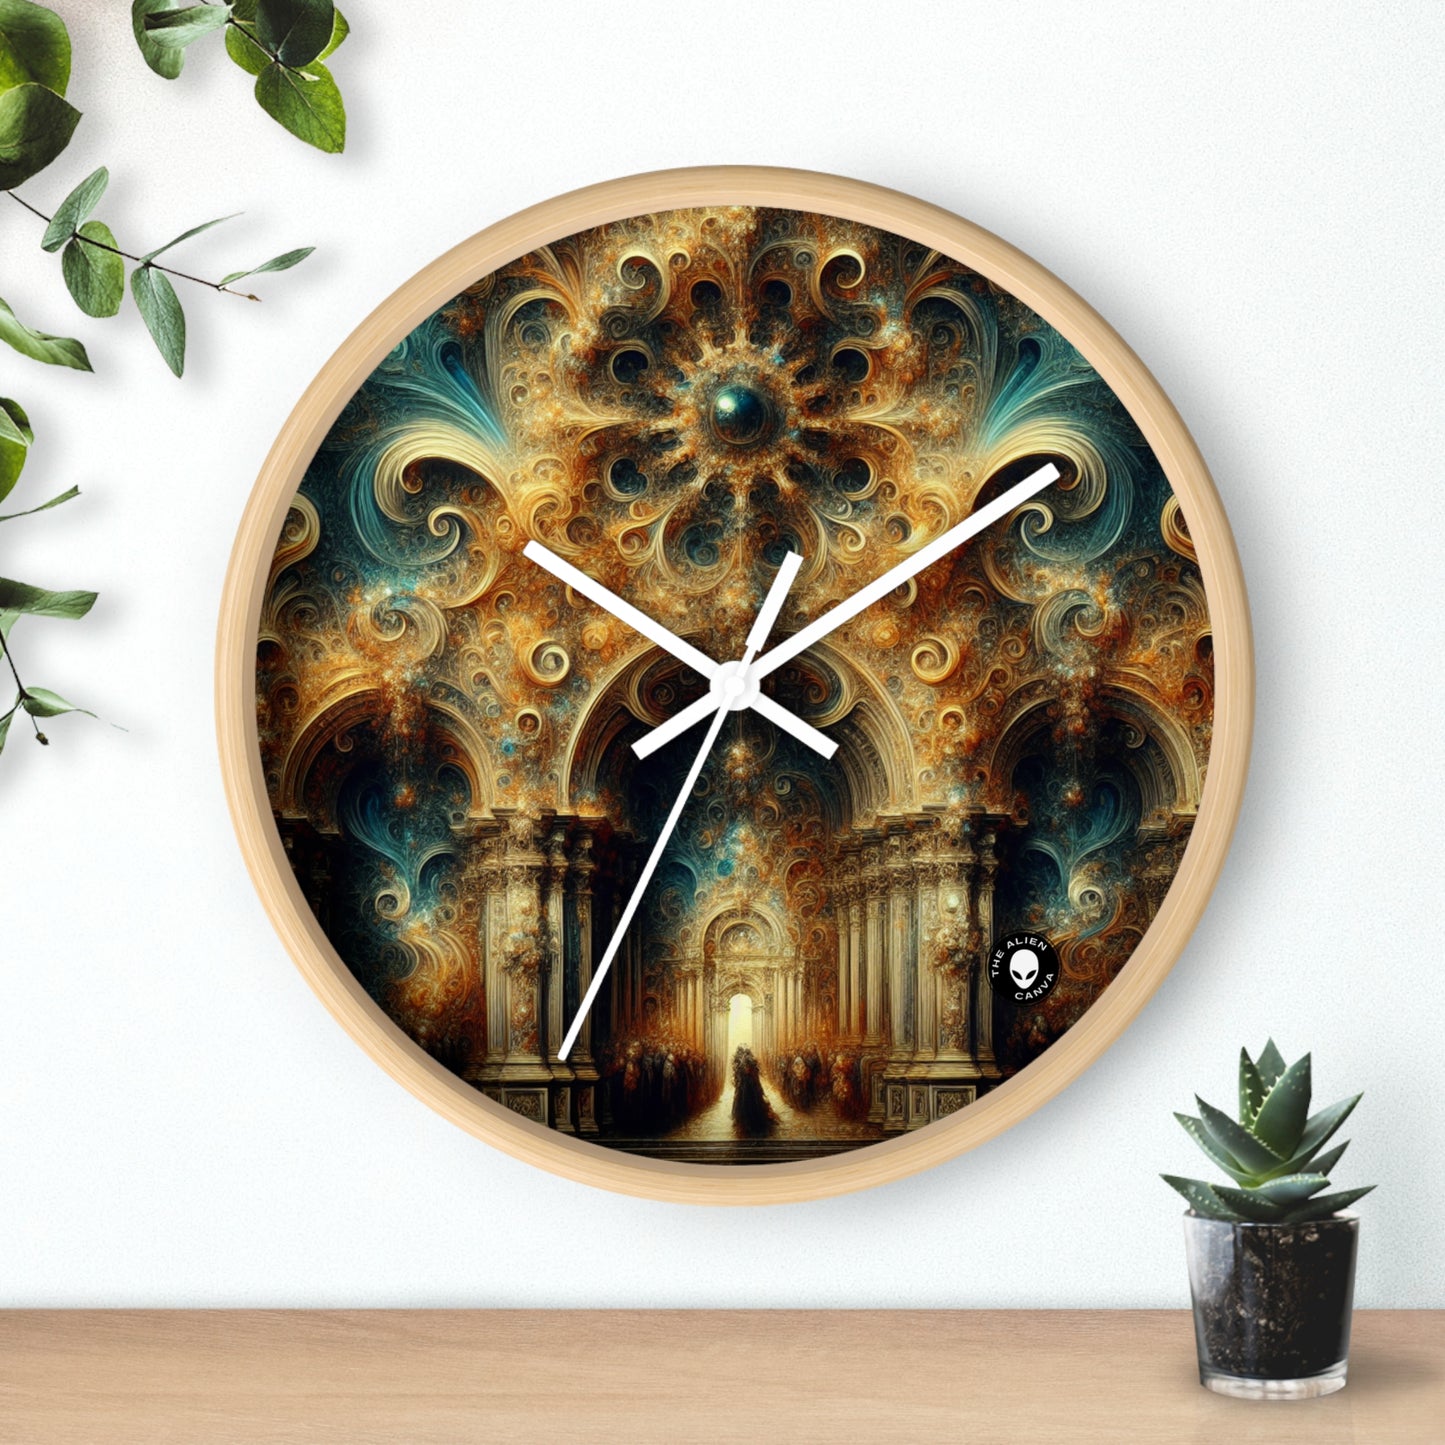 "Festin opulent : un banquet baroque" - L'horloge murale extraterrestre baroque